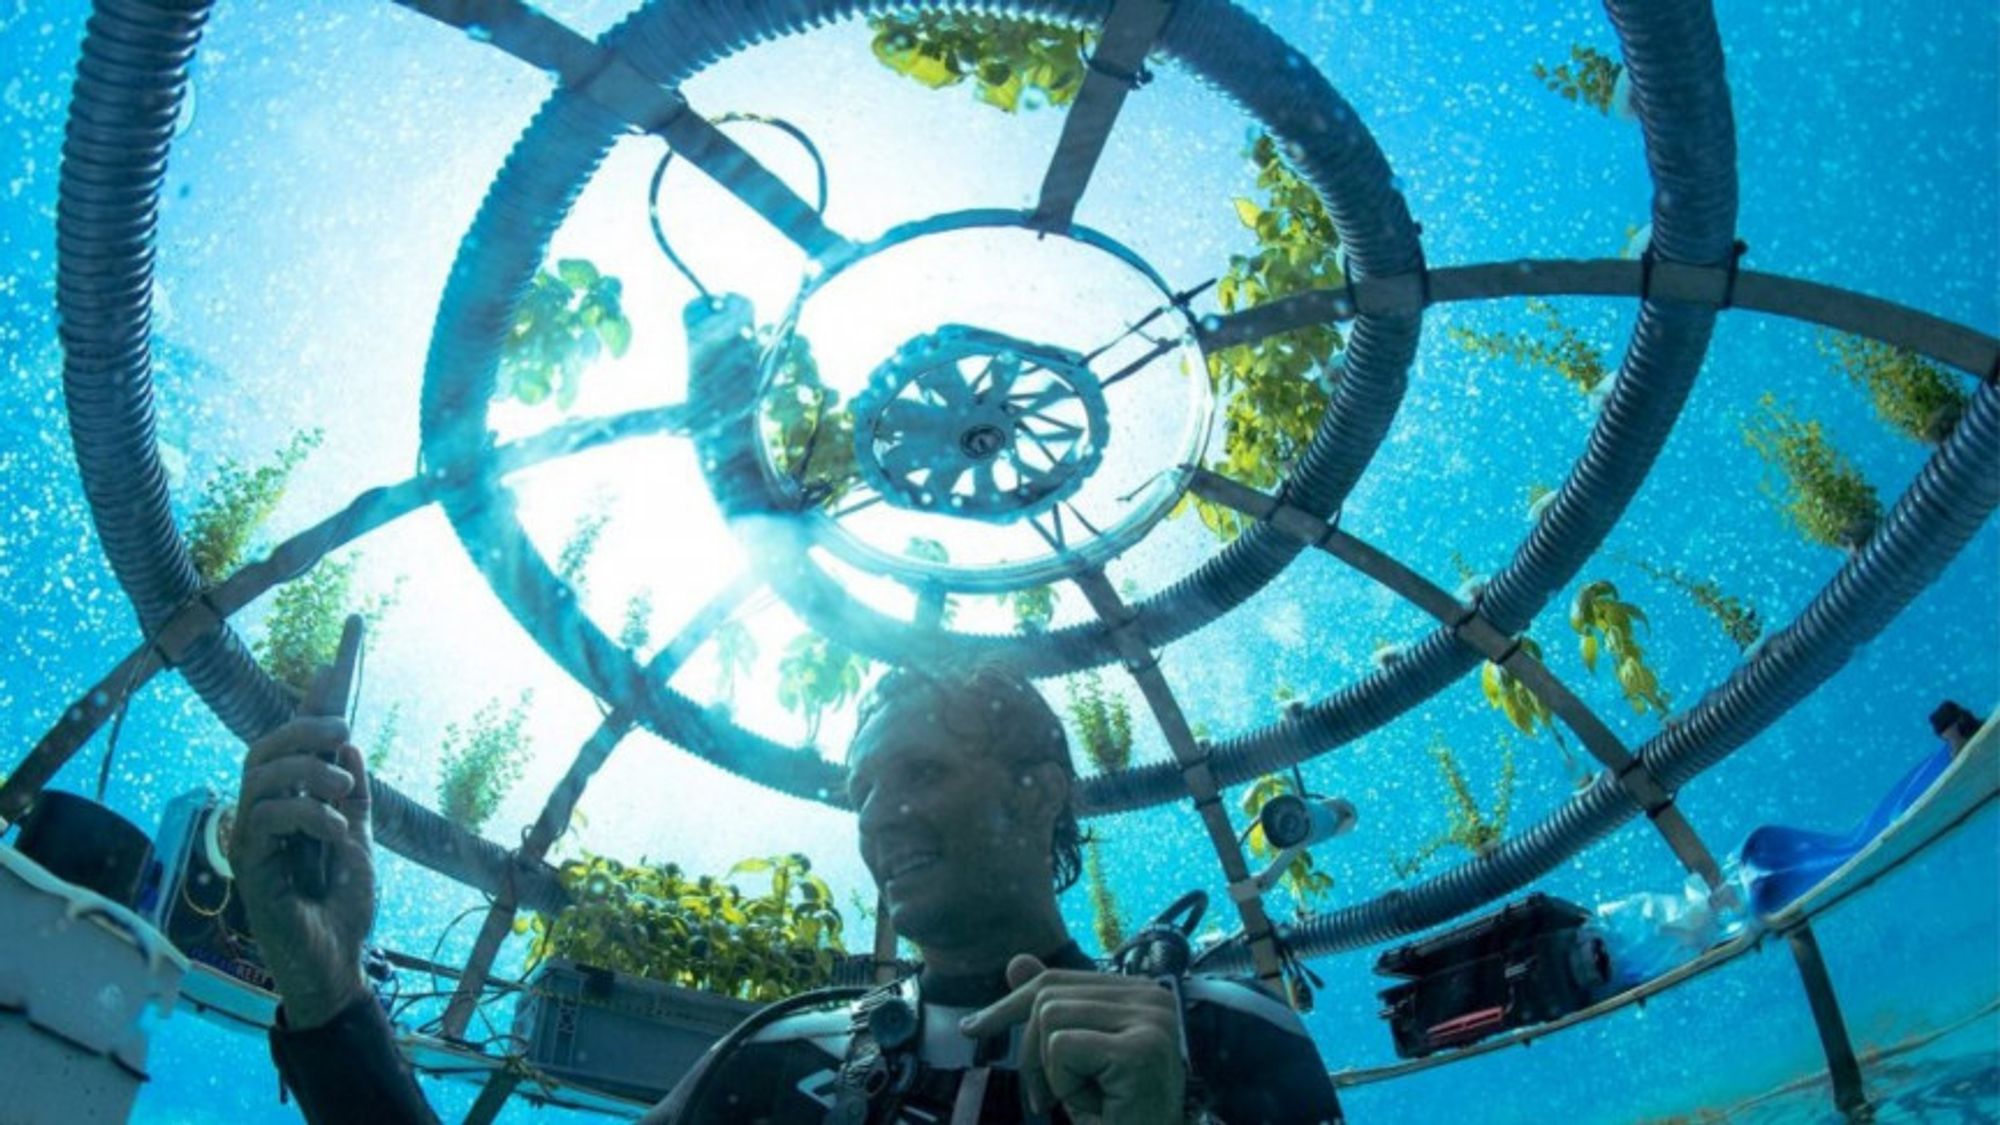 https://interestingengineering.com/nemos-garden-underwater-greenhouse-agriculture